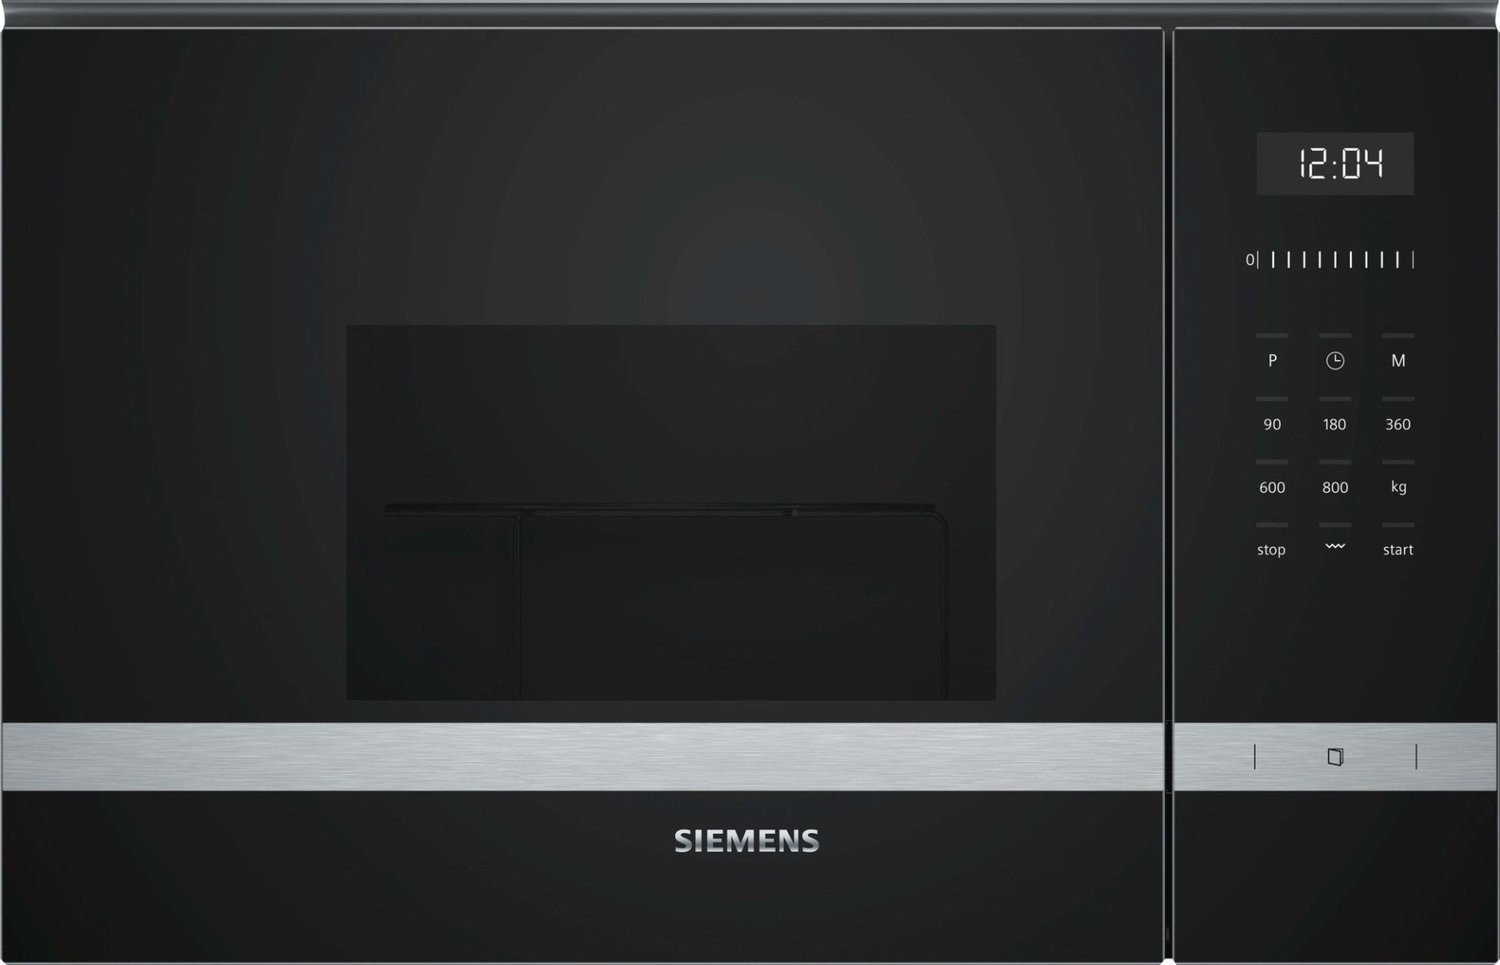 Siemens Forno a Microonde ad Incasso BF555LMS0 iQ500 Microonde 25 l.  incasso 38 cm Vetro nero con acciaio inox